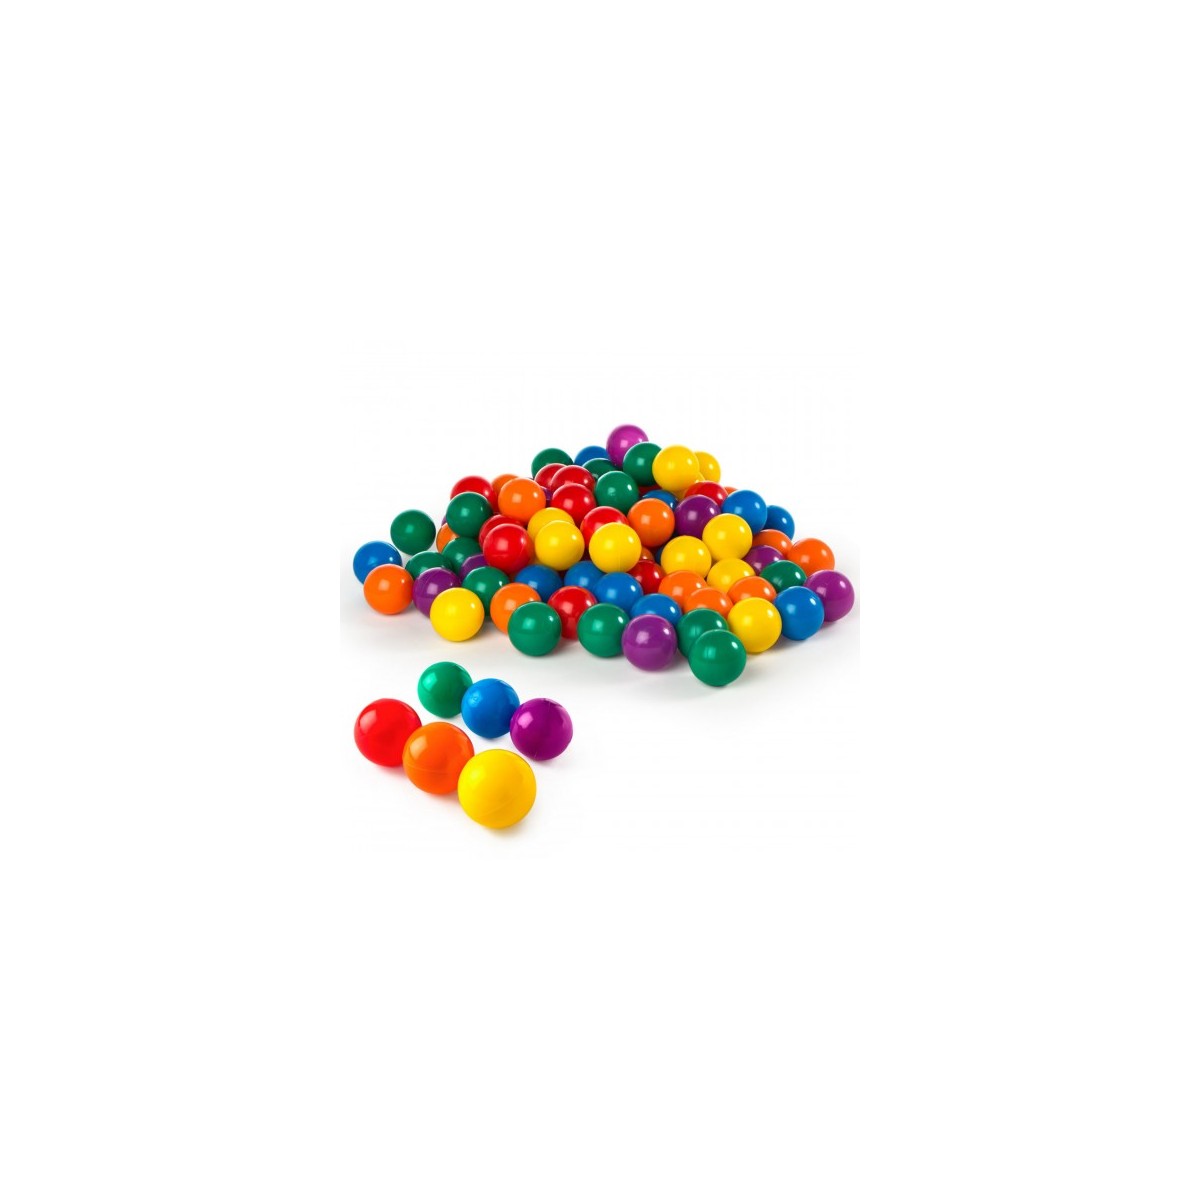 100 Bolas de Plástico de Colores  Juego para Bebés, Piscina Infantil, Cama  Elástica, Castillo Hinchable, Túnel Plegable